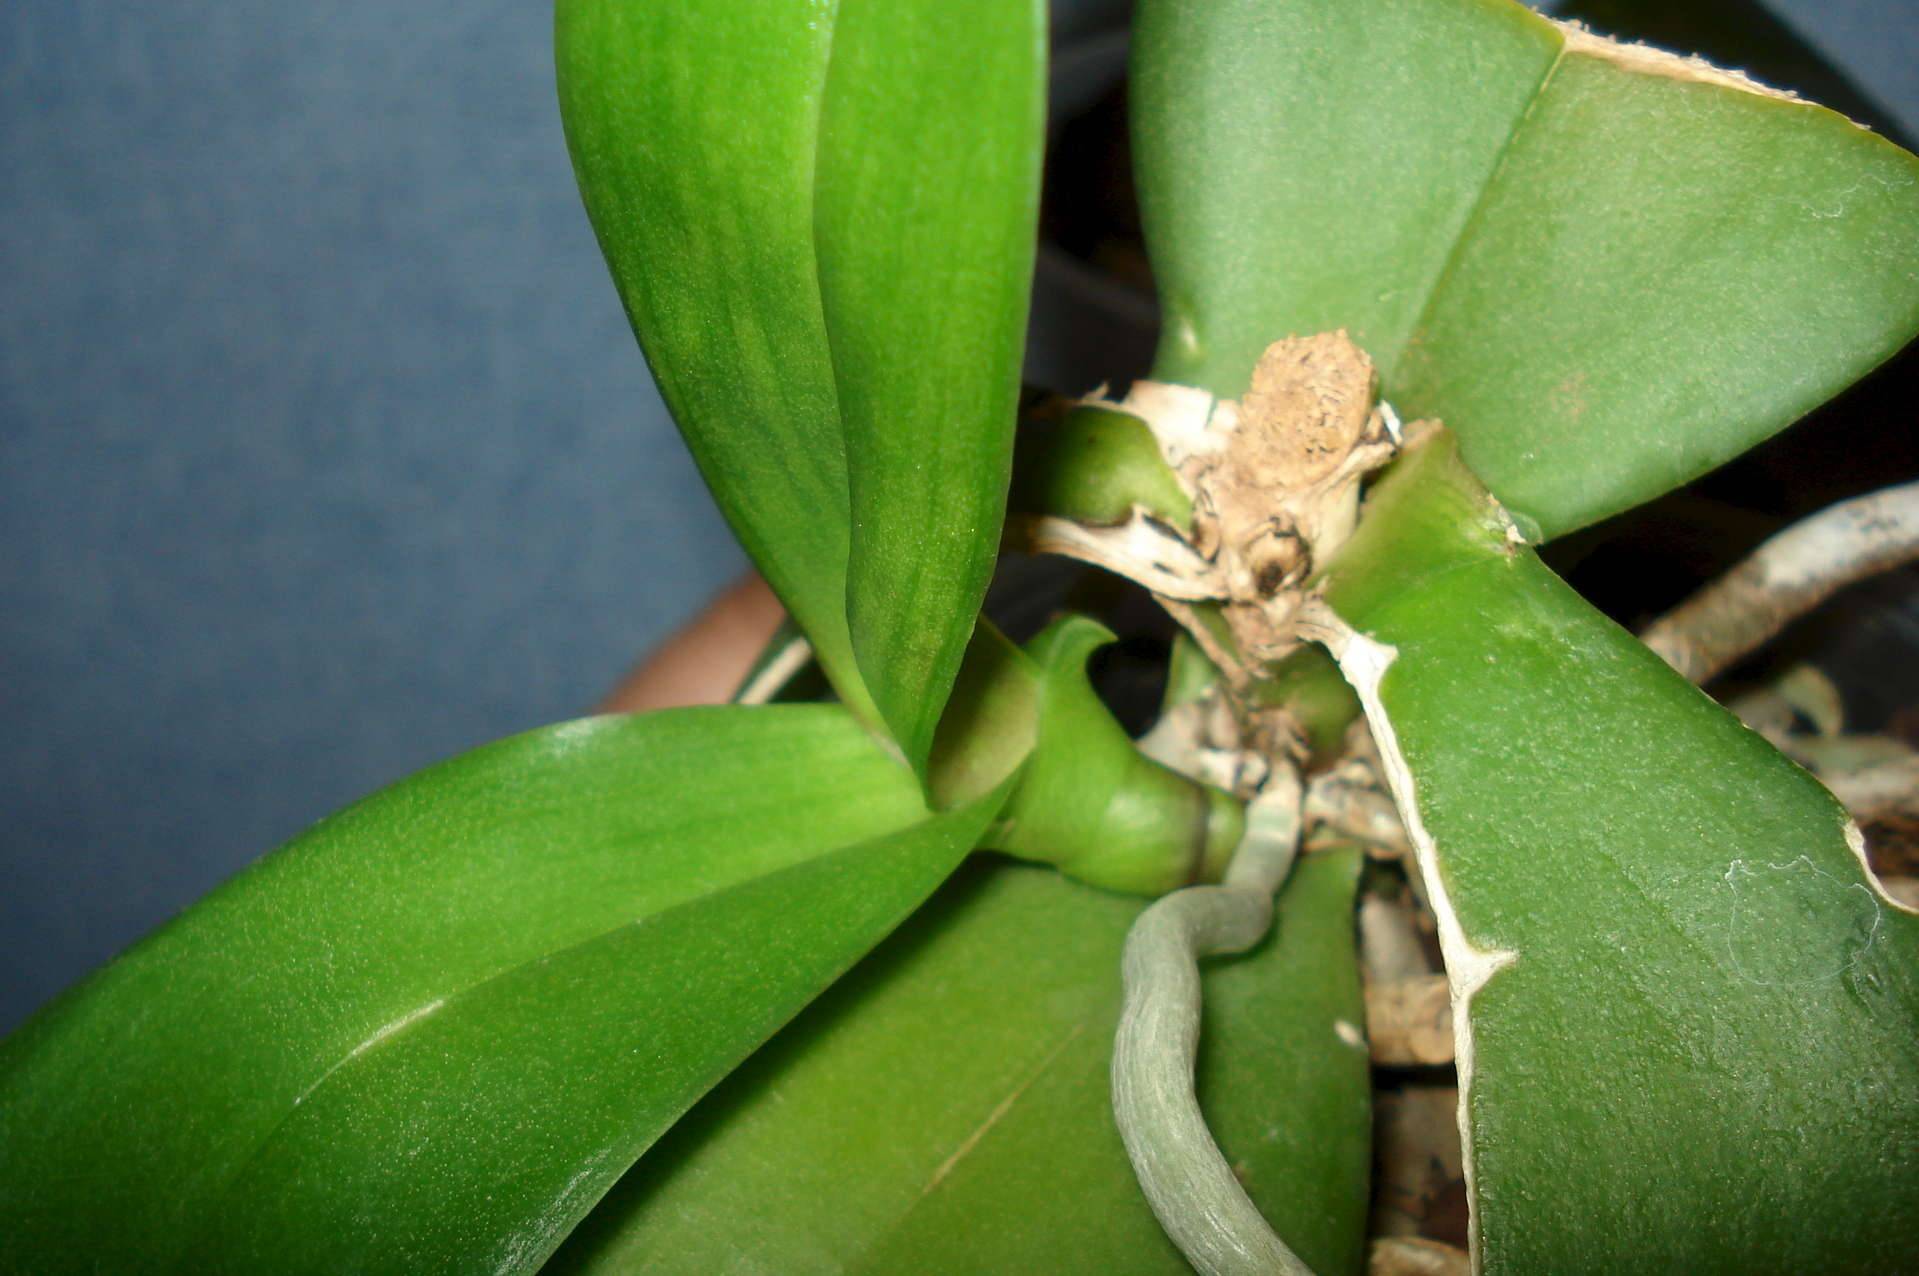 Какие бывают разные проблемы с точкой роста орхидеи (нет, сгнила)?